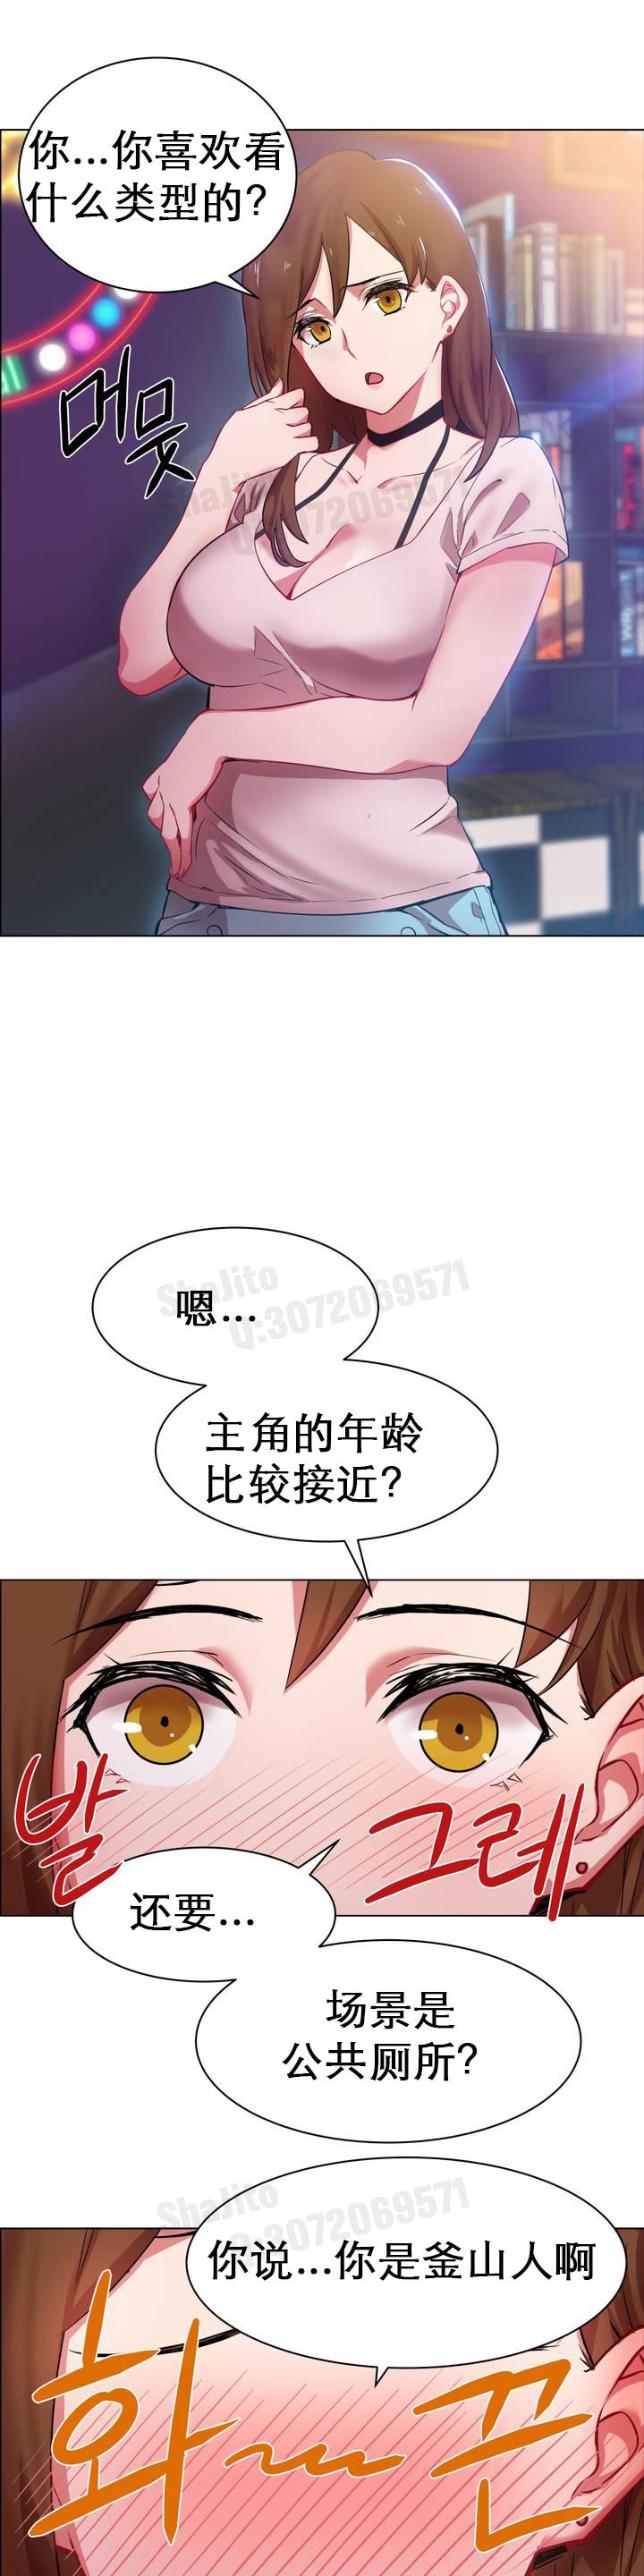 rental girls AV租片女郎 1-3 Chinese 2